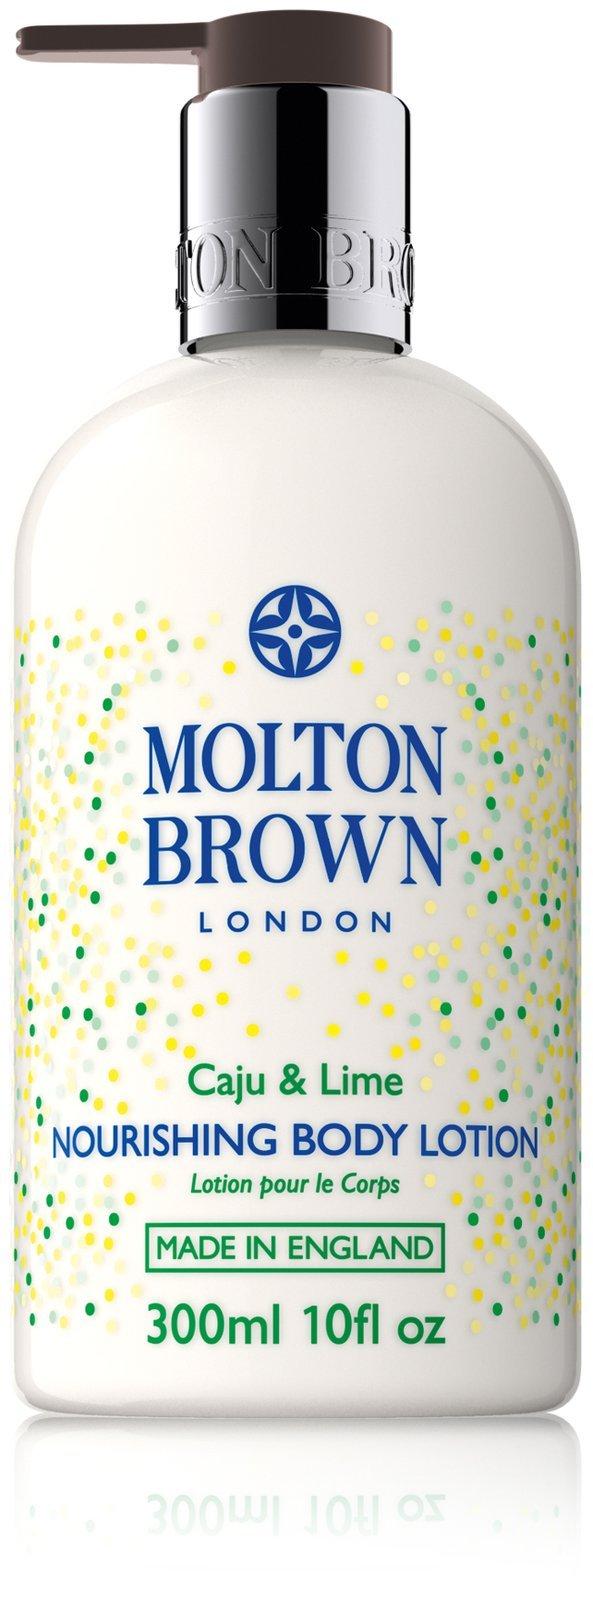 Molton Brown Body Lotion - 10 Oz